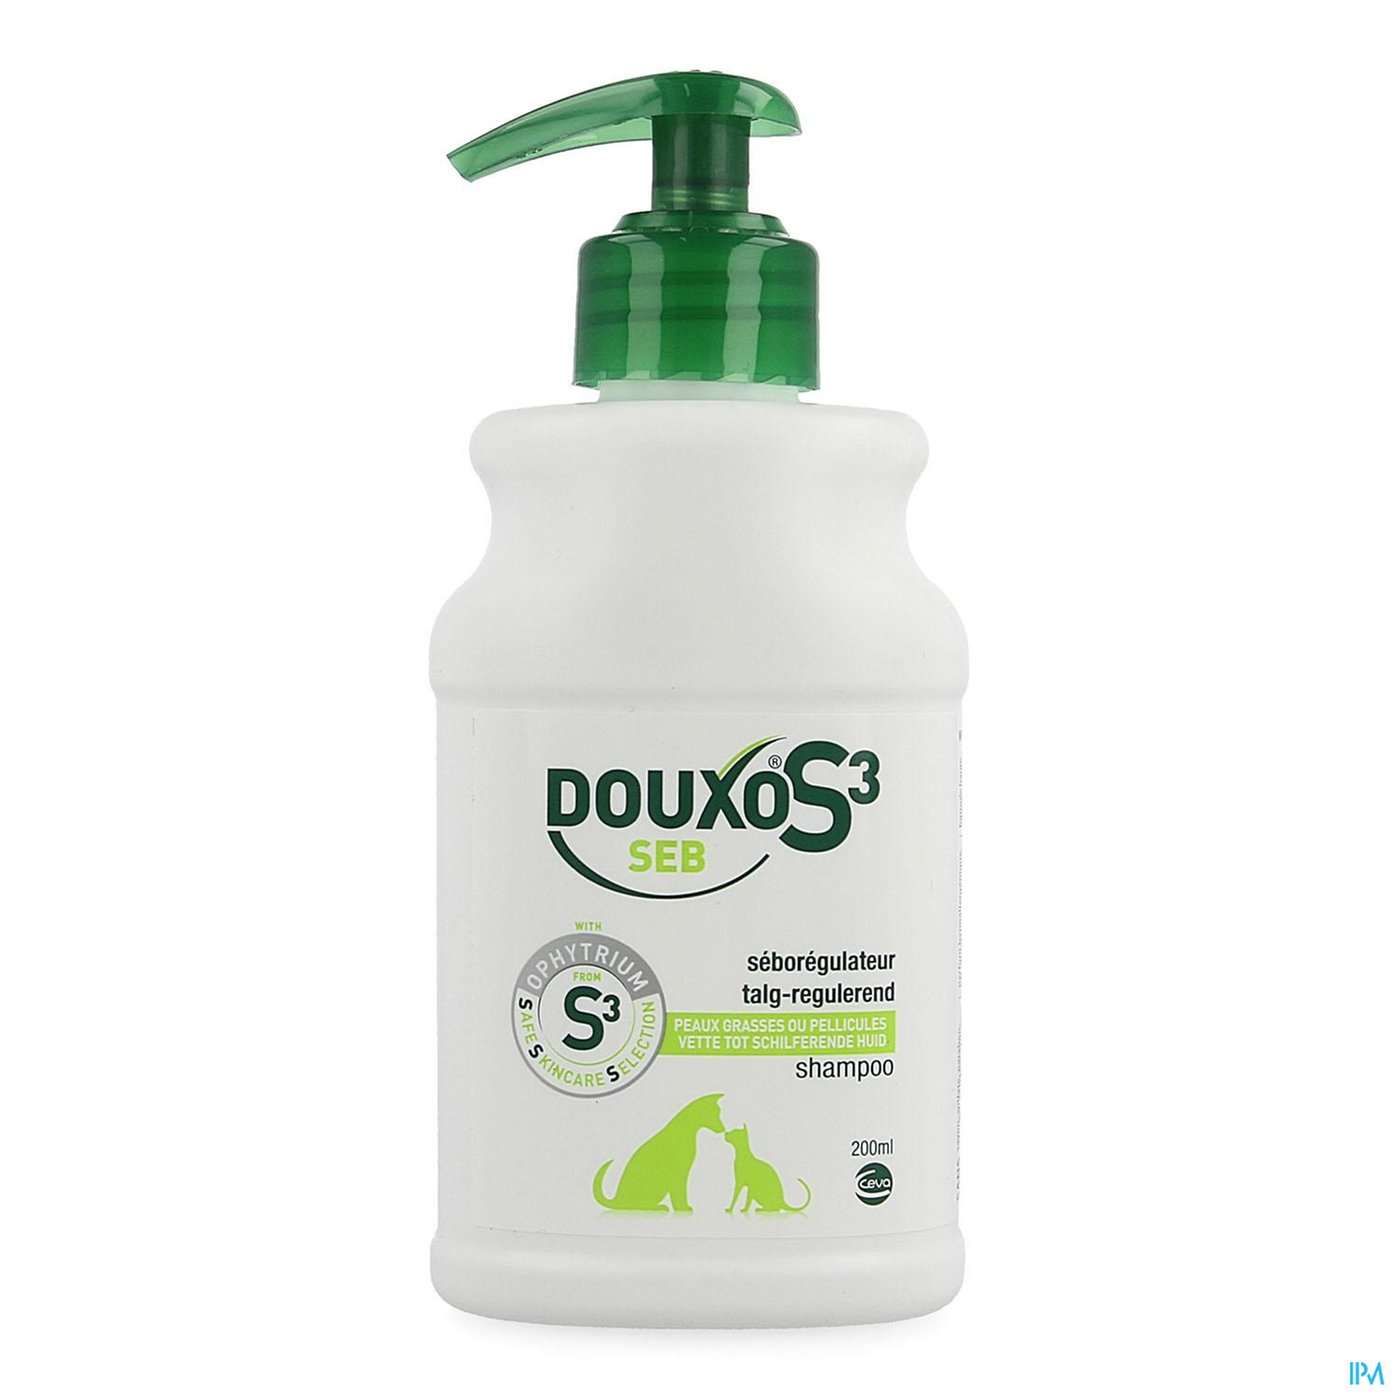 Douxo S3 Seb Shampoo 200ml packshot